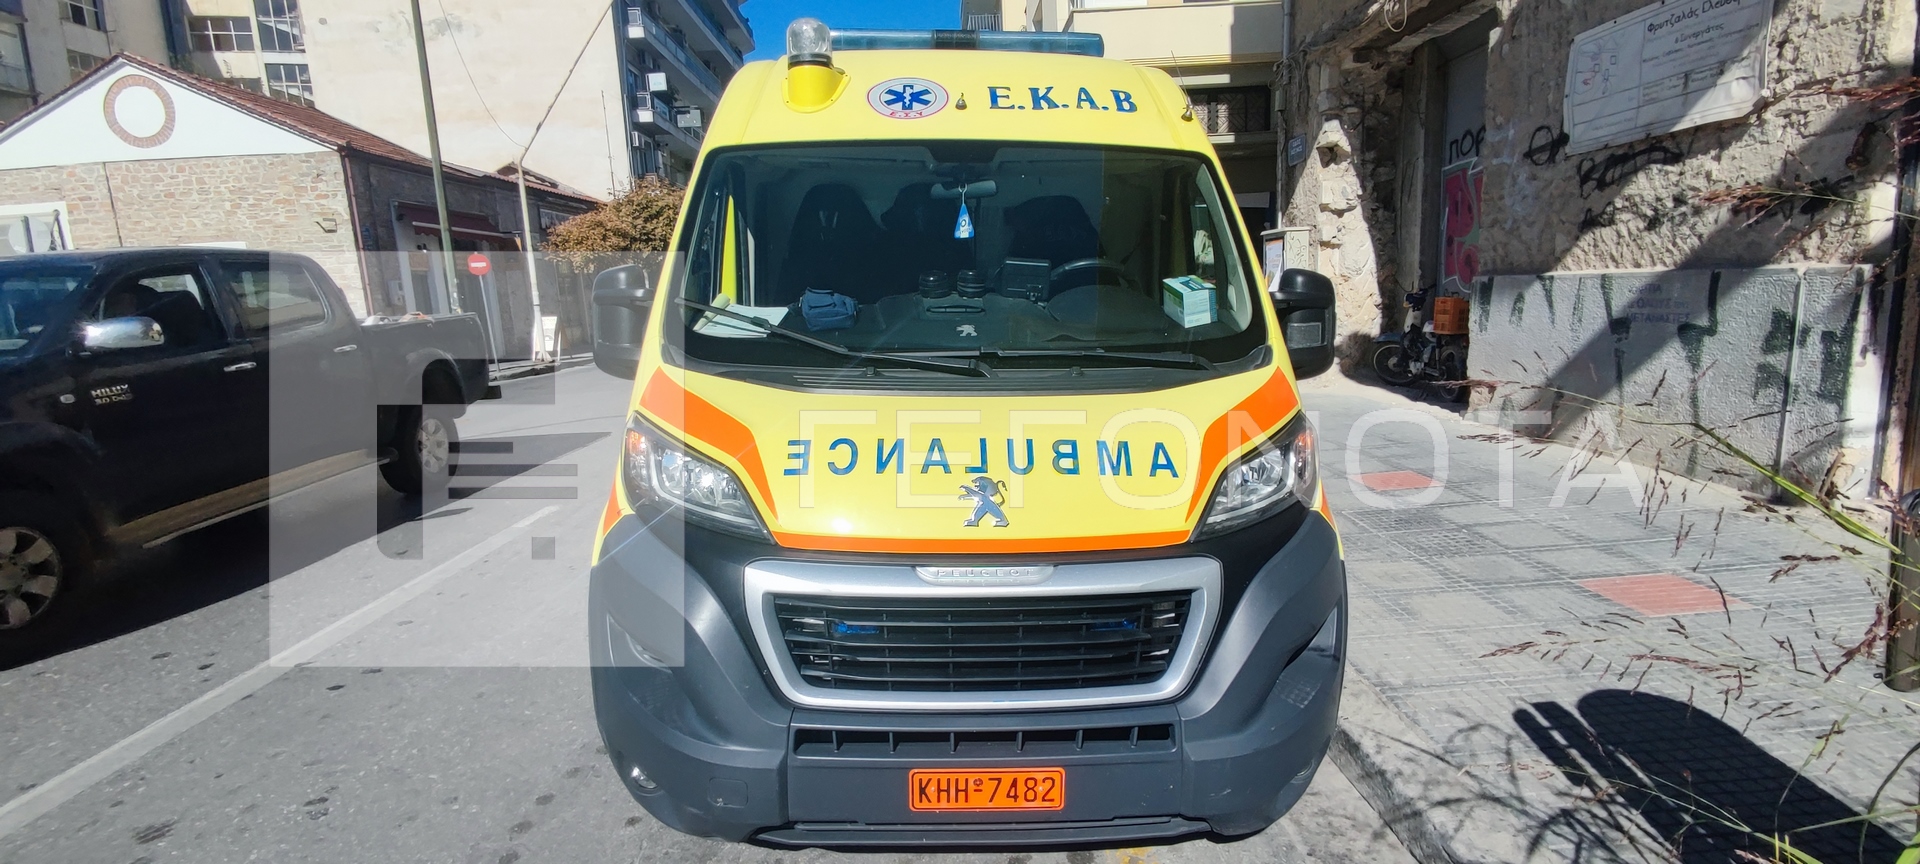 Θεσσαλονίκη: Τροχαίο με τρία αυτοκίνητα και μία μοτοσικλέτα – Ένας σοβαρά τραυματίας